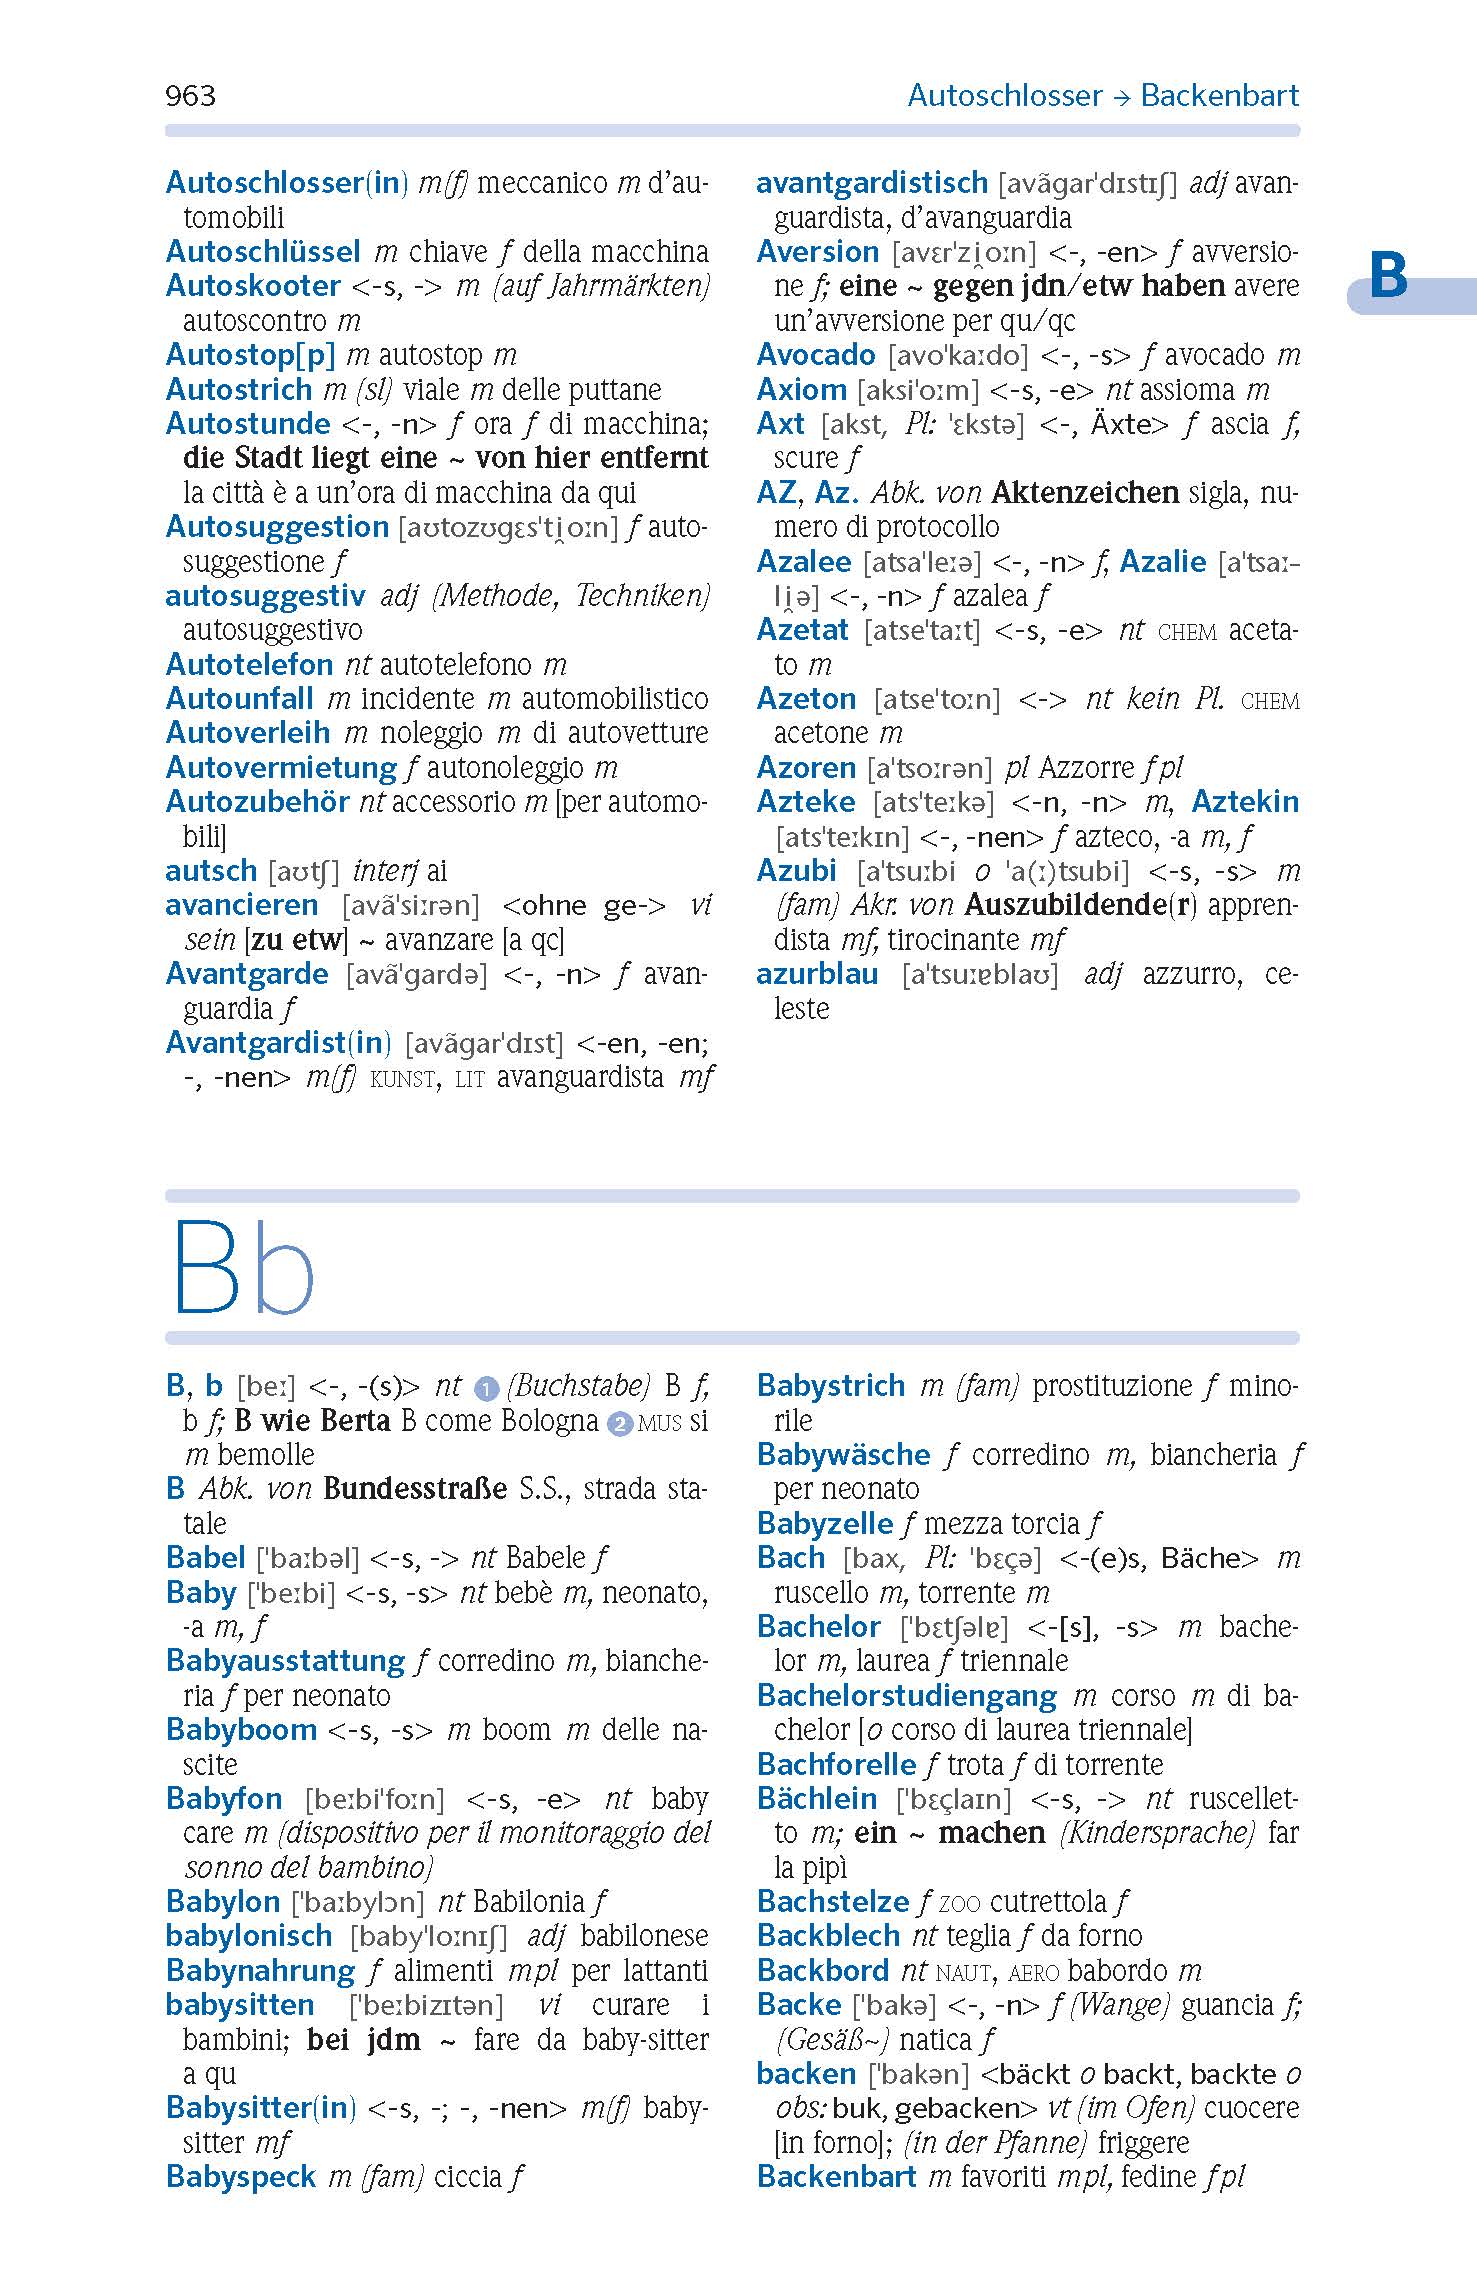 PONS Schülerwörterbuch Klausurausgabe Italienisch